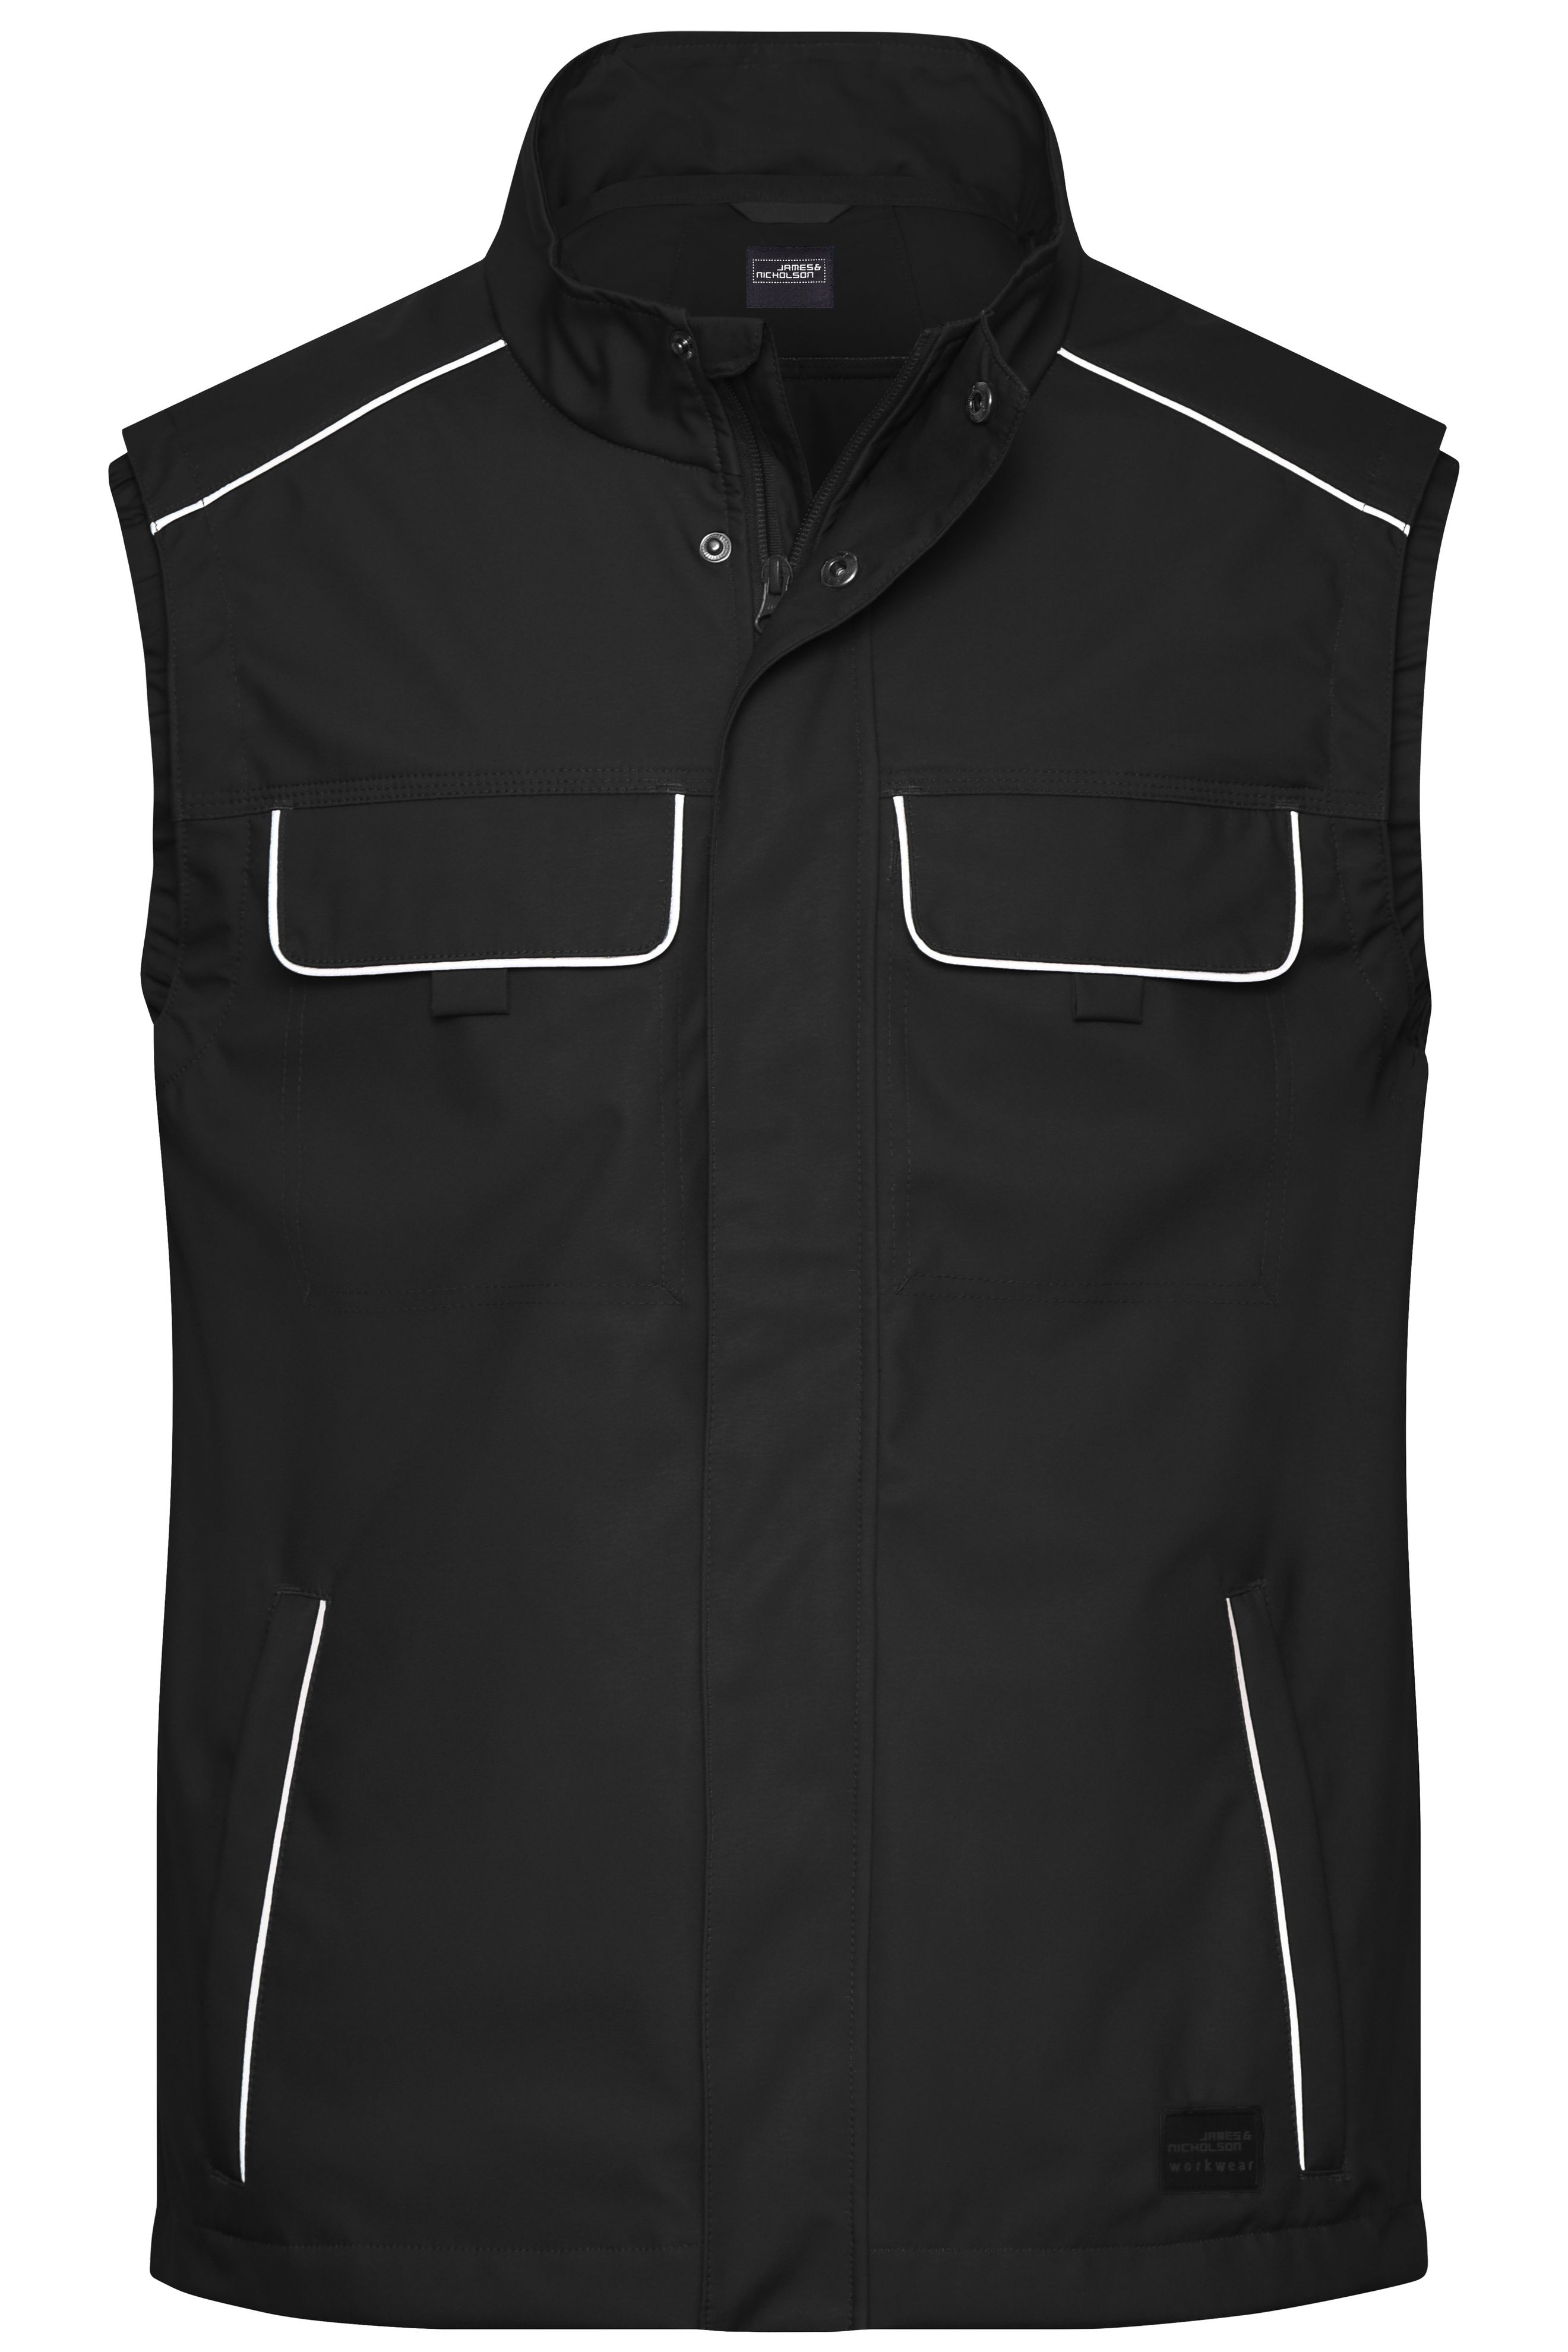 Workwear Softshell Light Vest - SOLID - JN881 Professionelle, leichte Softshellweste im cleanen Look mit hochwertigen Details